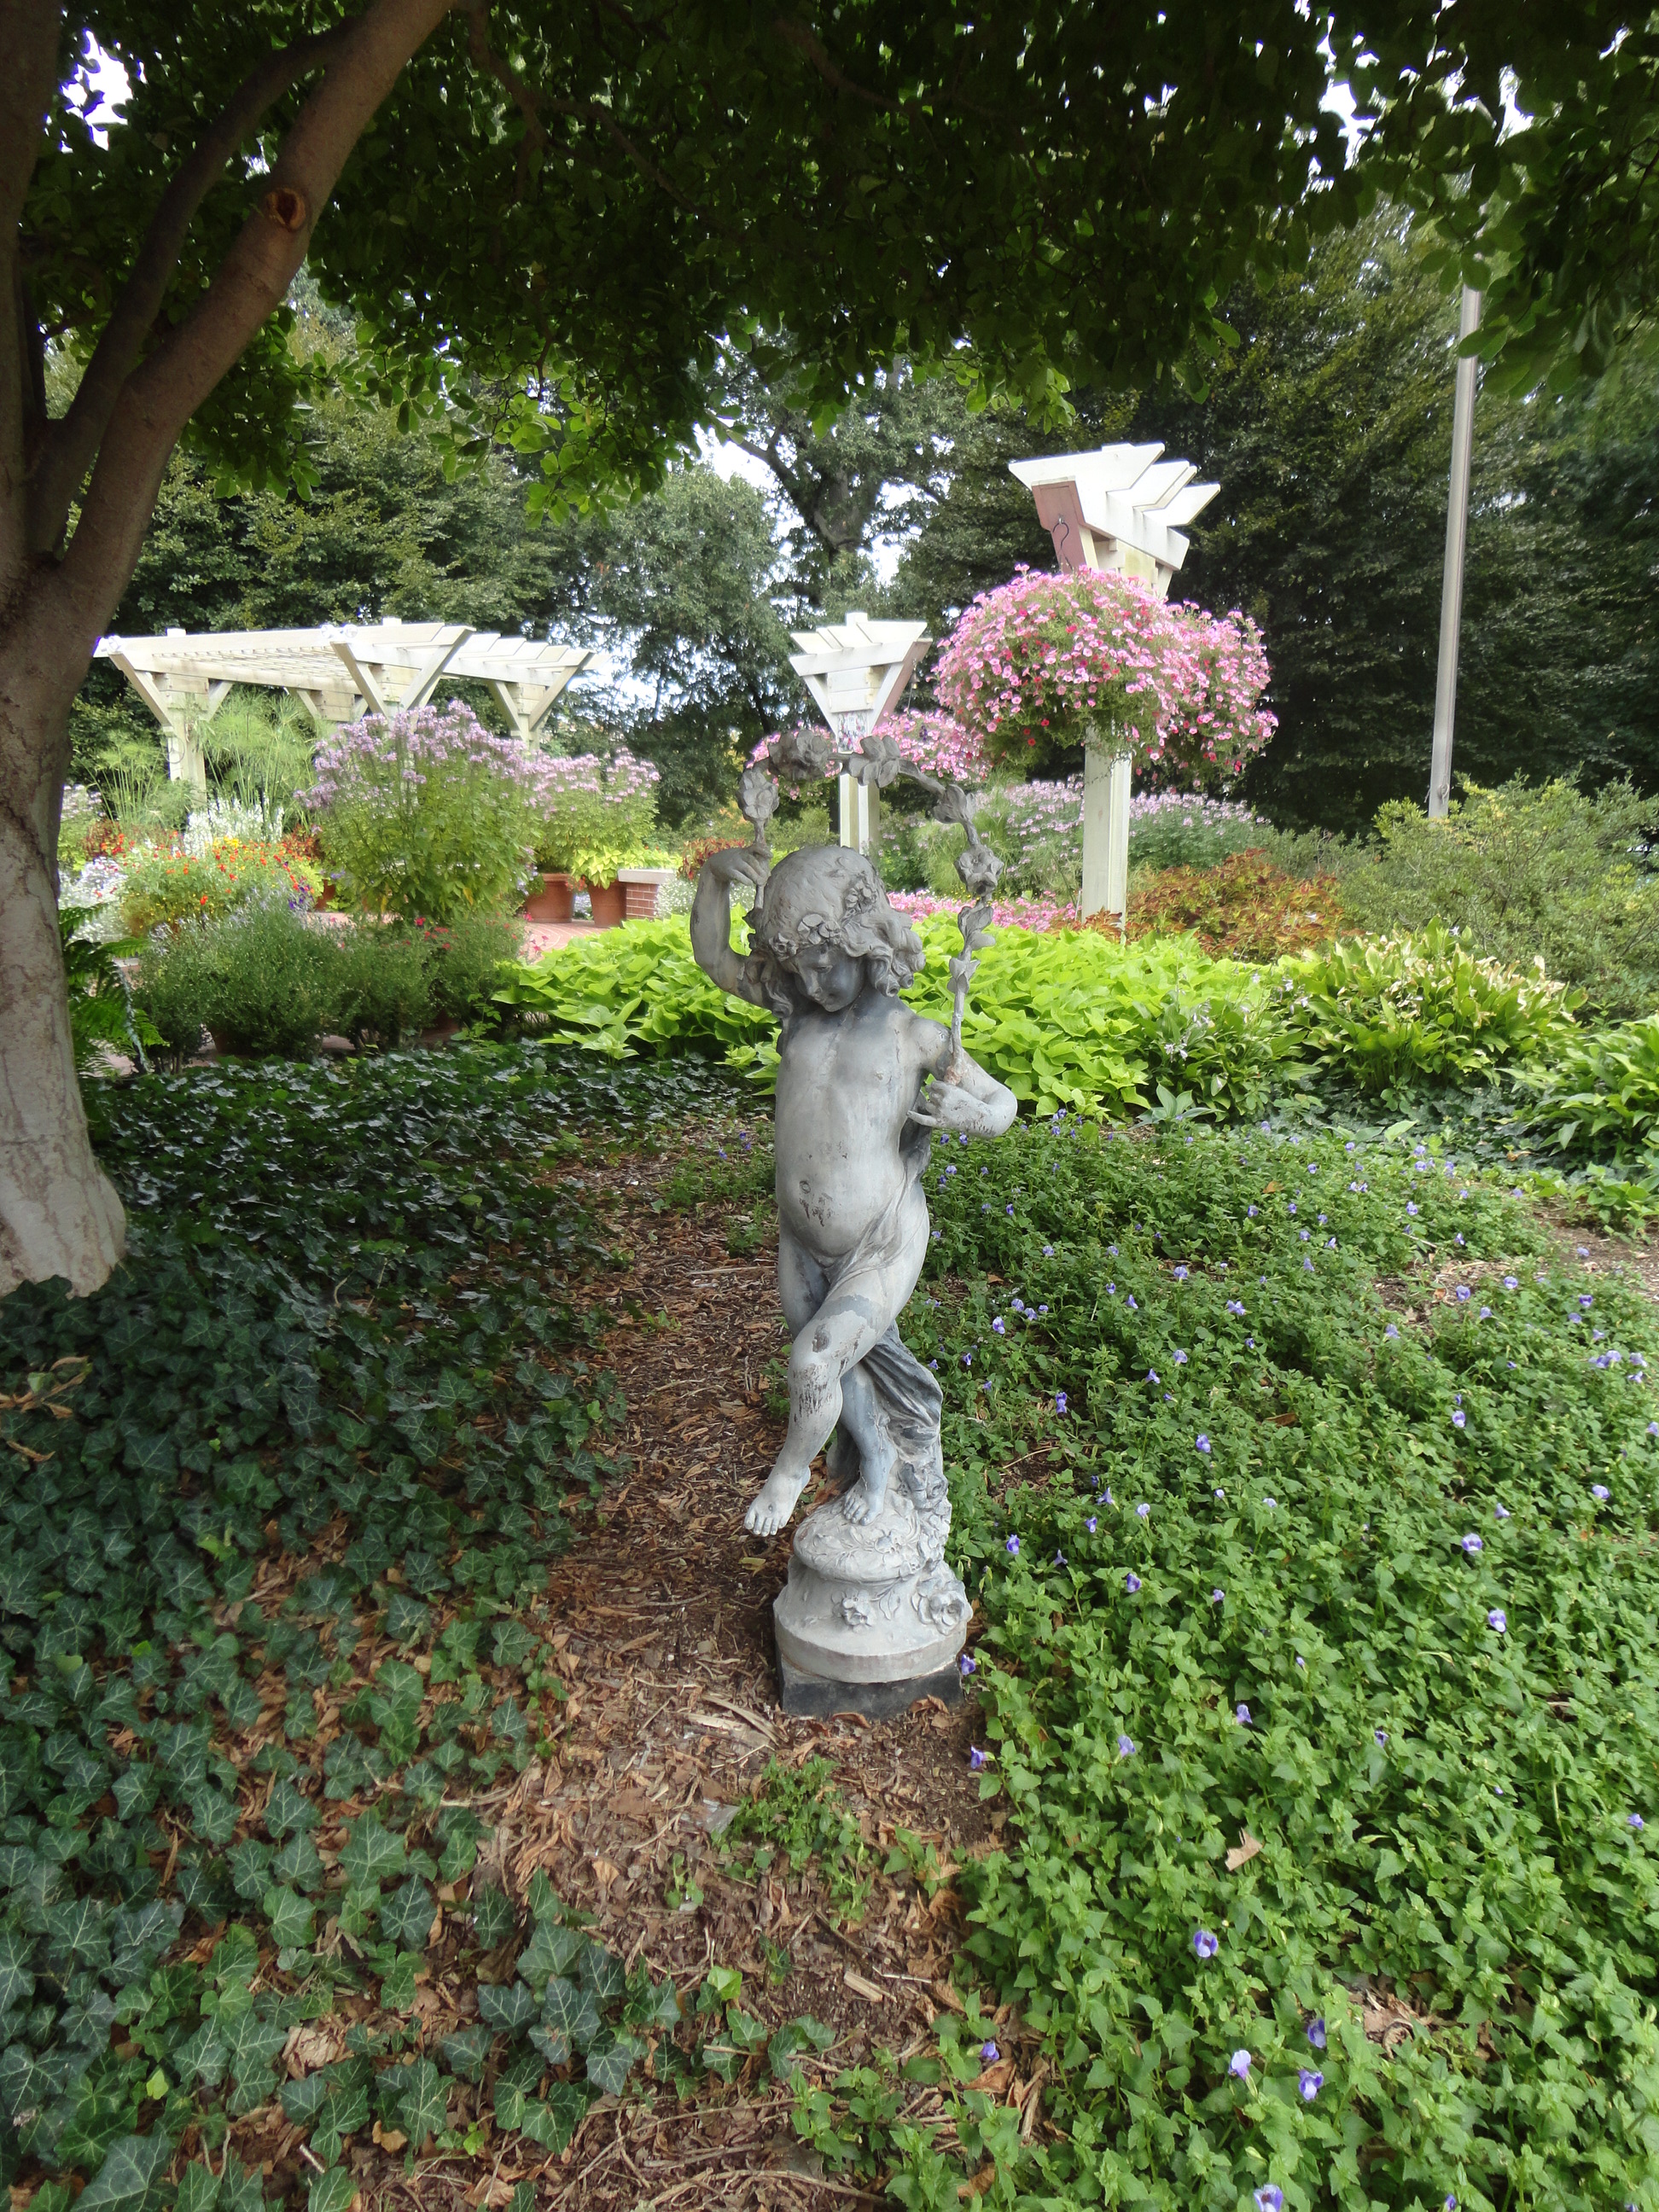 Garden at the Illinois Executive Mansion